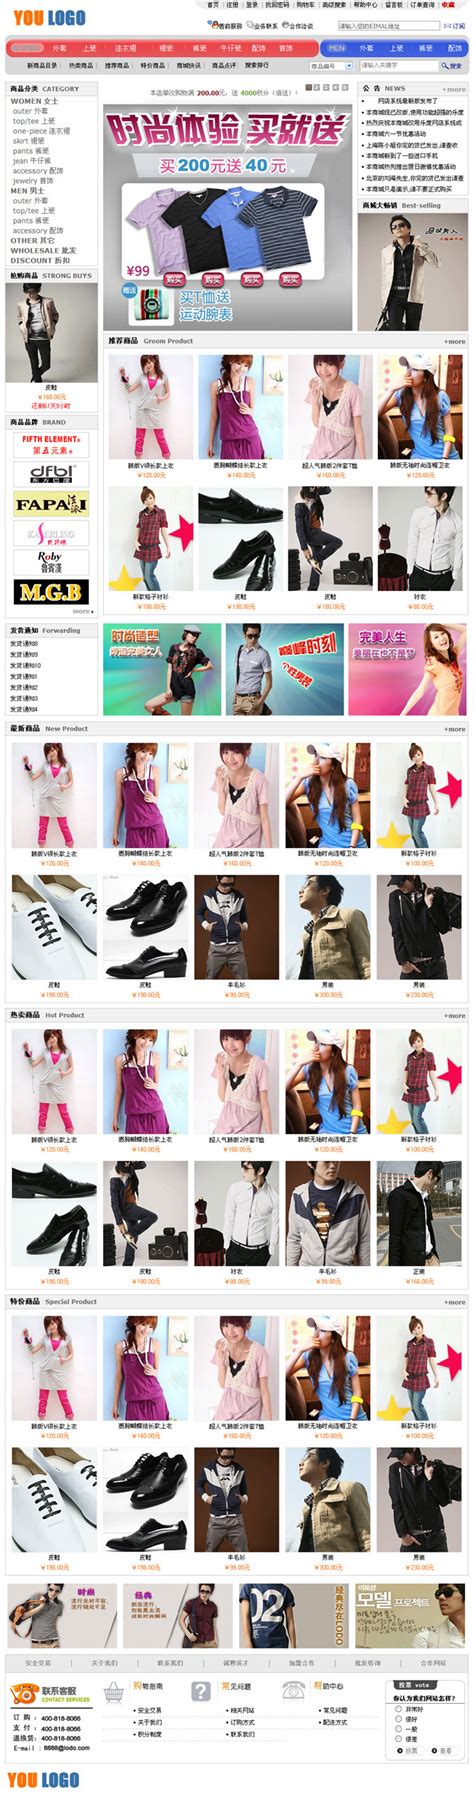 奇乐网上服装购物商城网站模板页面设计效果图